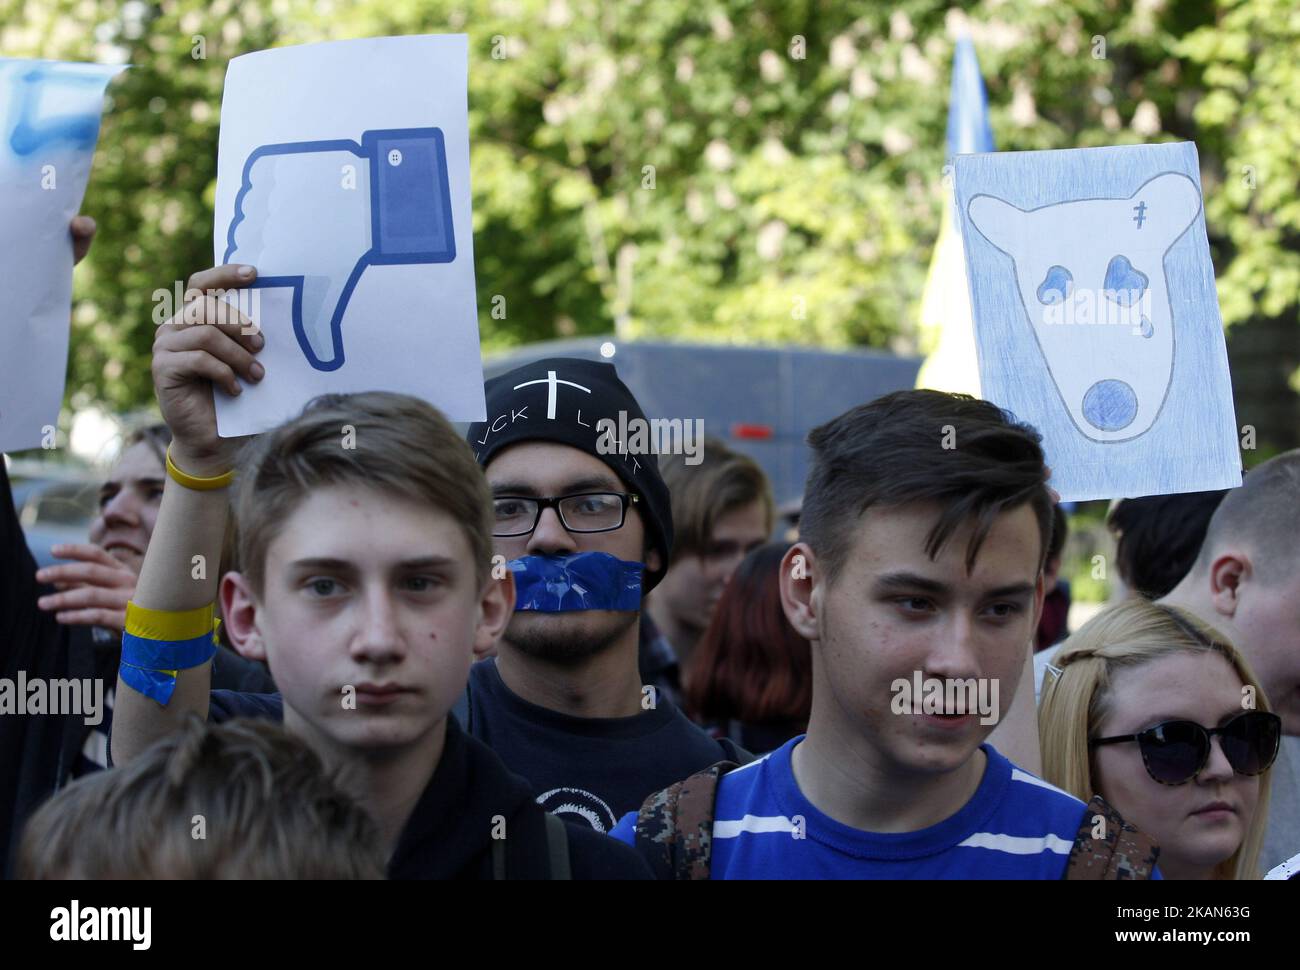 Сеть запрещенная организация. Протестующие за мир в Украине. Соседи молодежь. Запрет протестов.